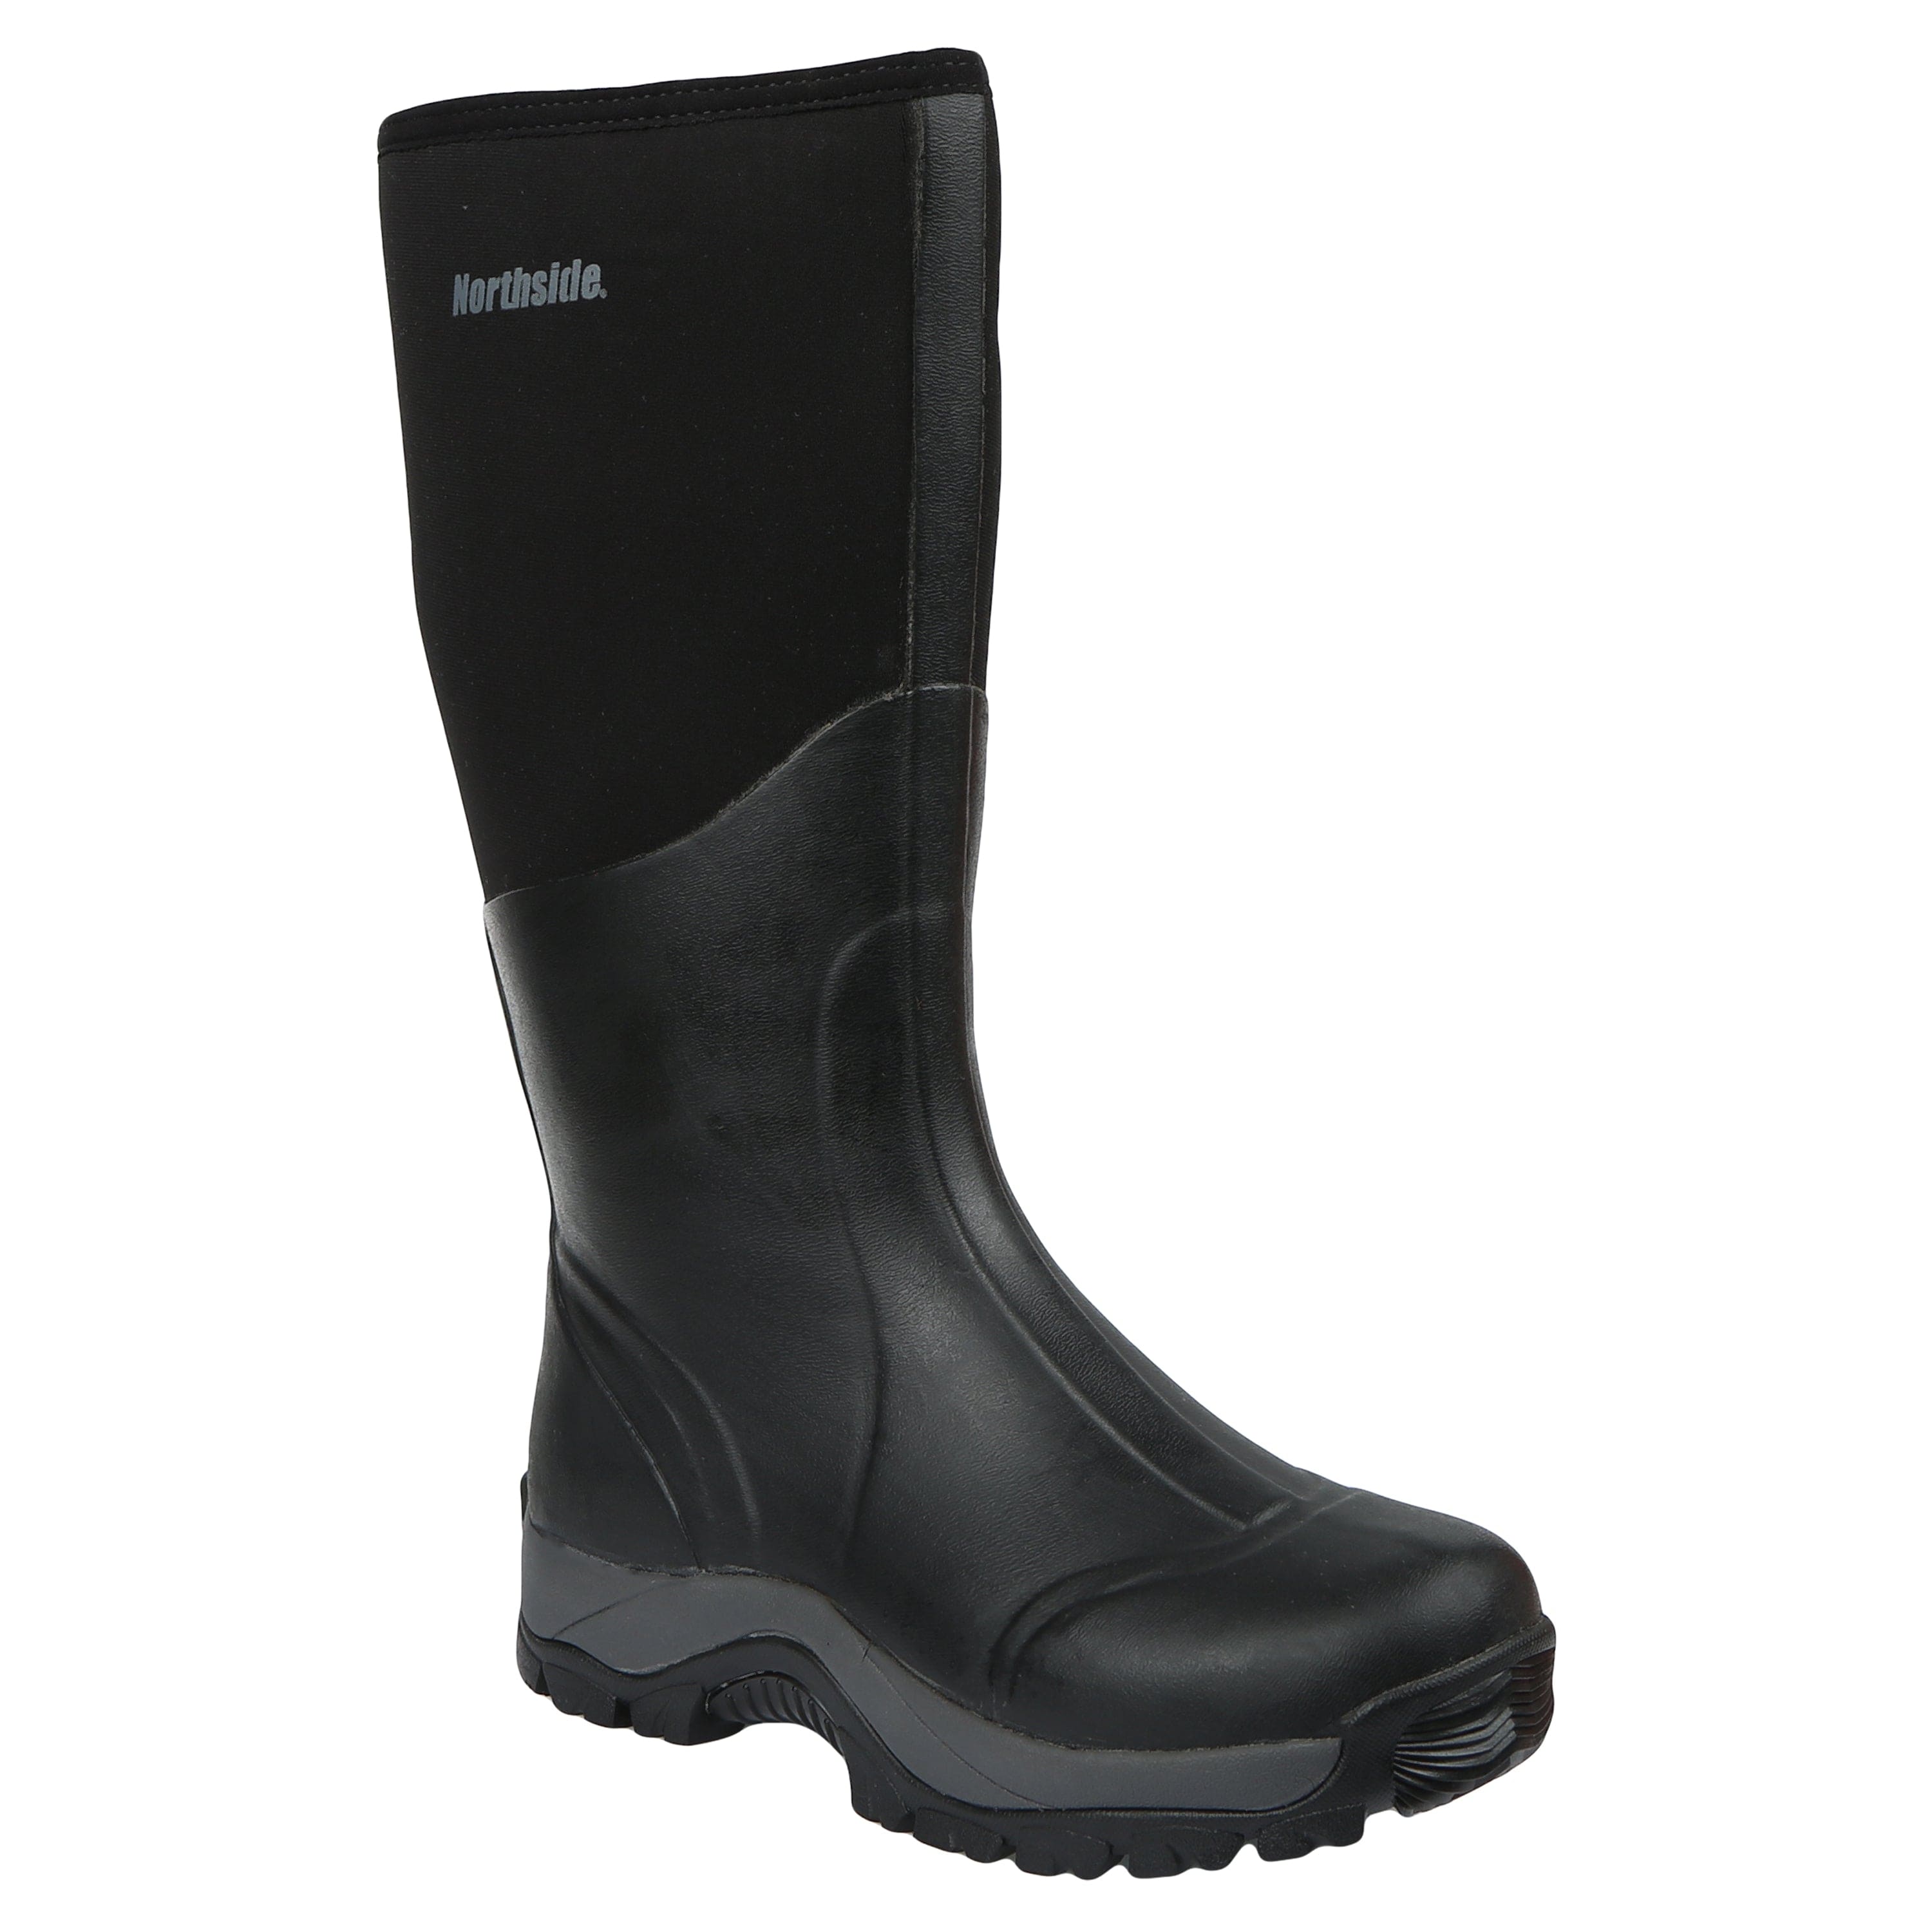 UFROGE Rubber Work Boot for Men, Outdoor Durable Waterproof Mid